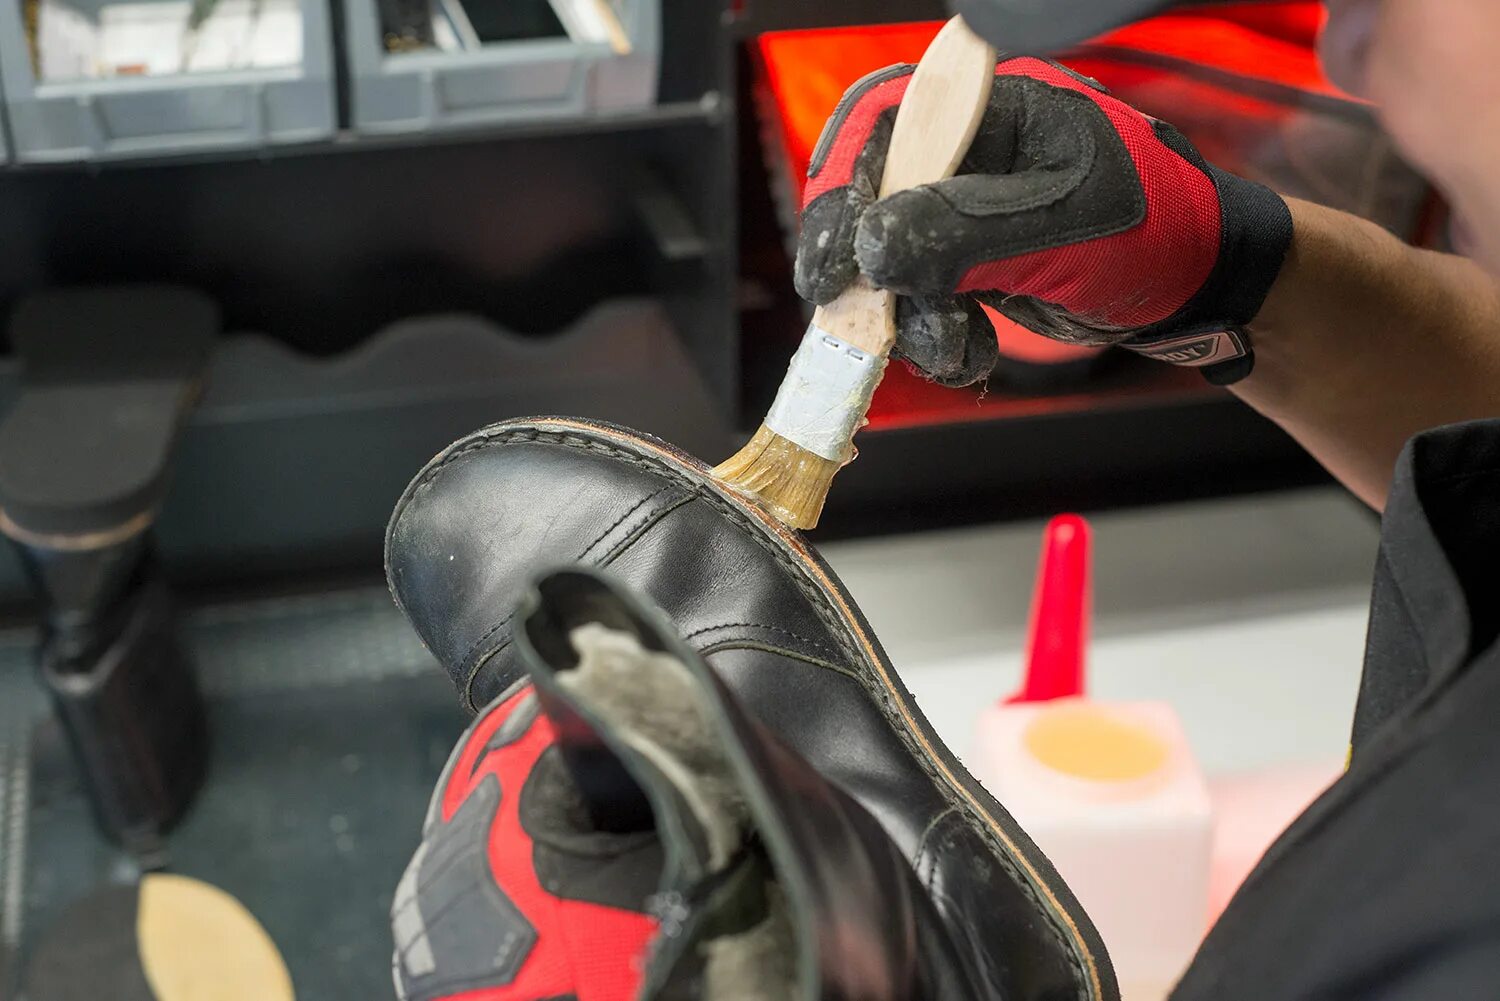 Обувная мастерская. Супинатор в обуви ремонт. Инструменты для ремонта обуви. Материалы для обувной мастерской. Качественный ремонт обуви